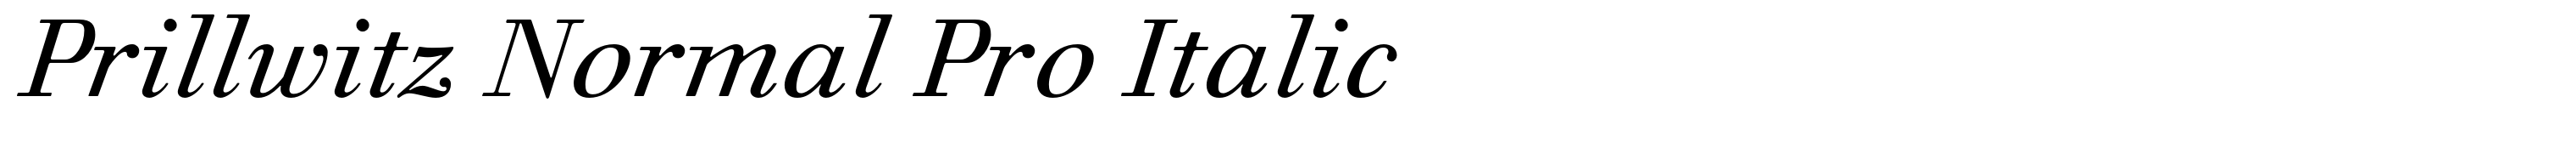 Prillwitz Normal Pro Italic